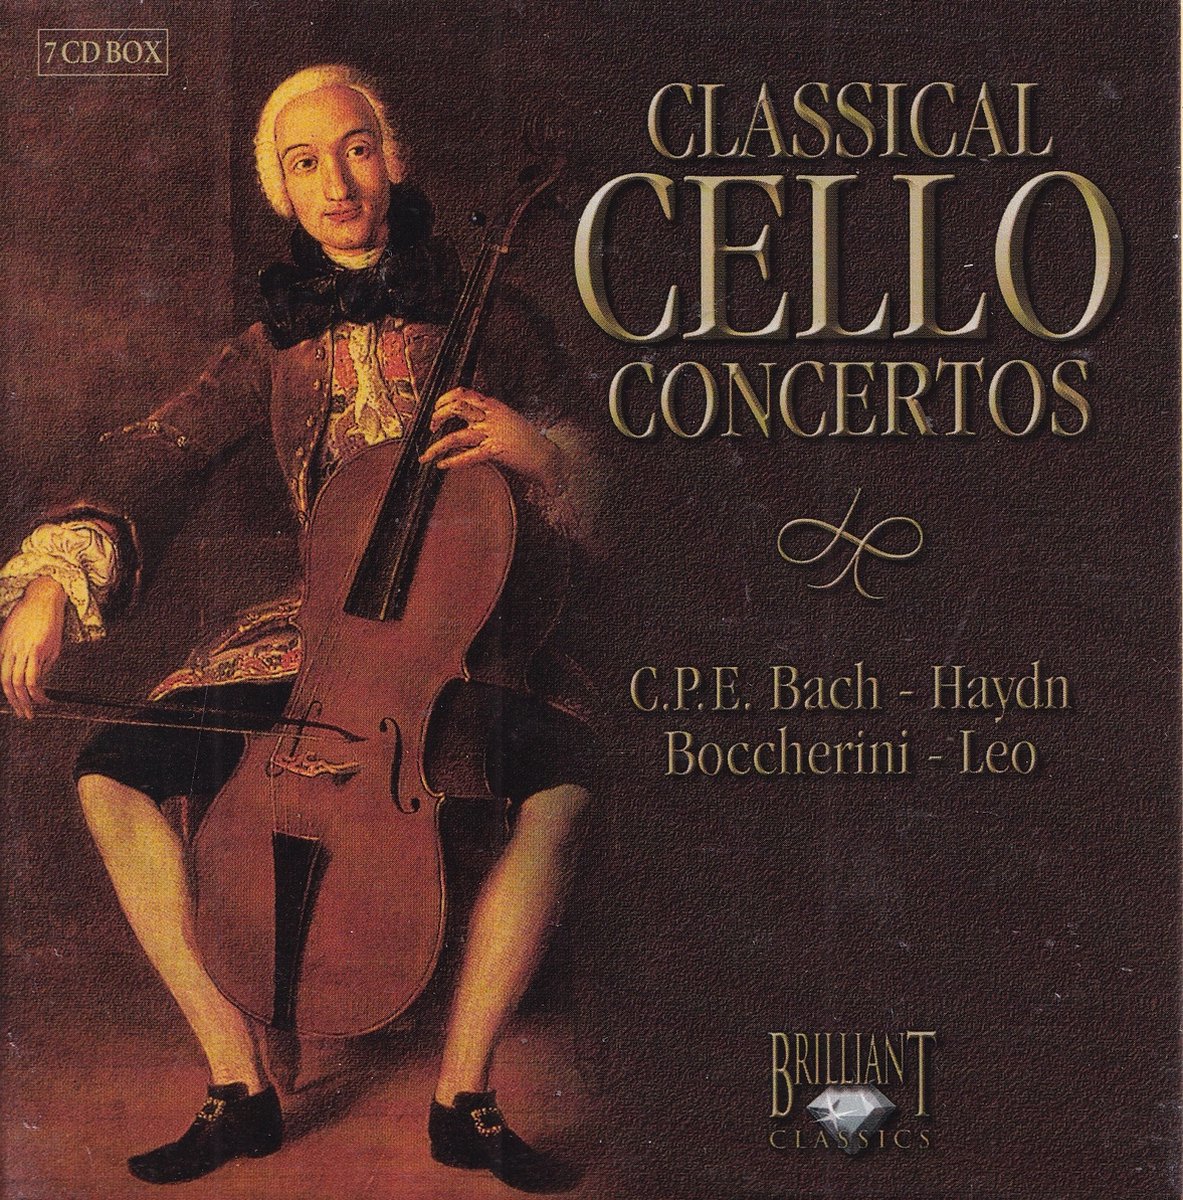 Classical Cello Concertos - various artists